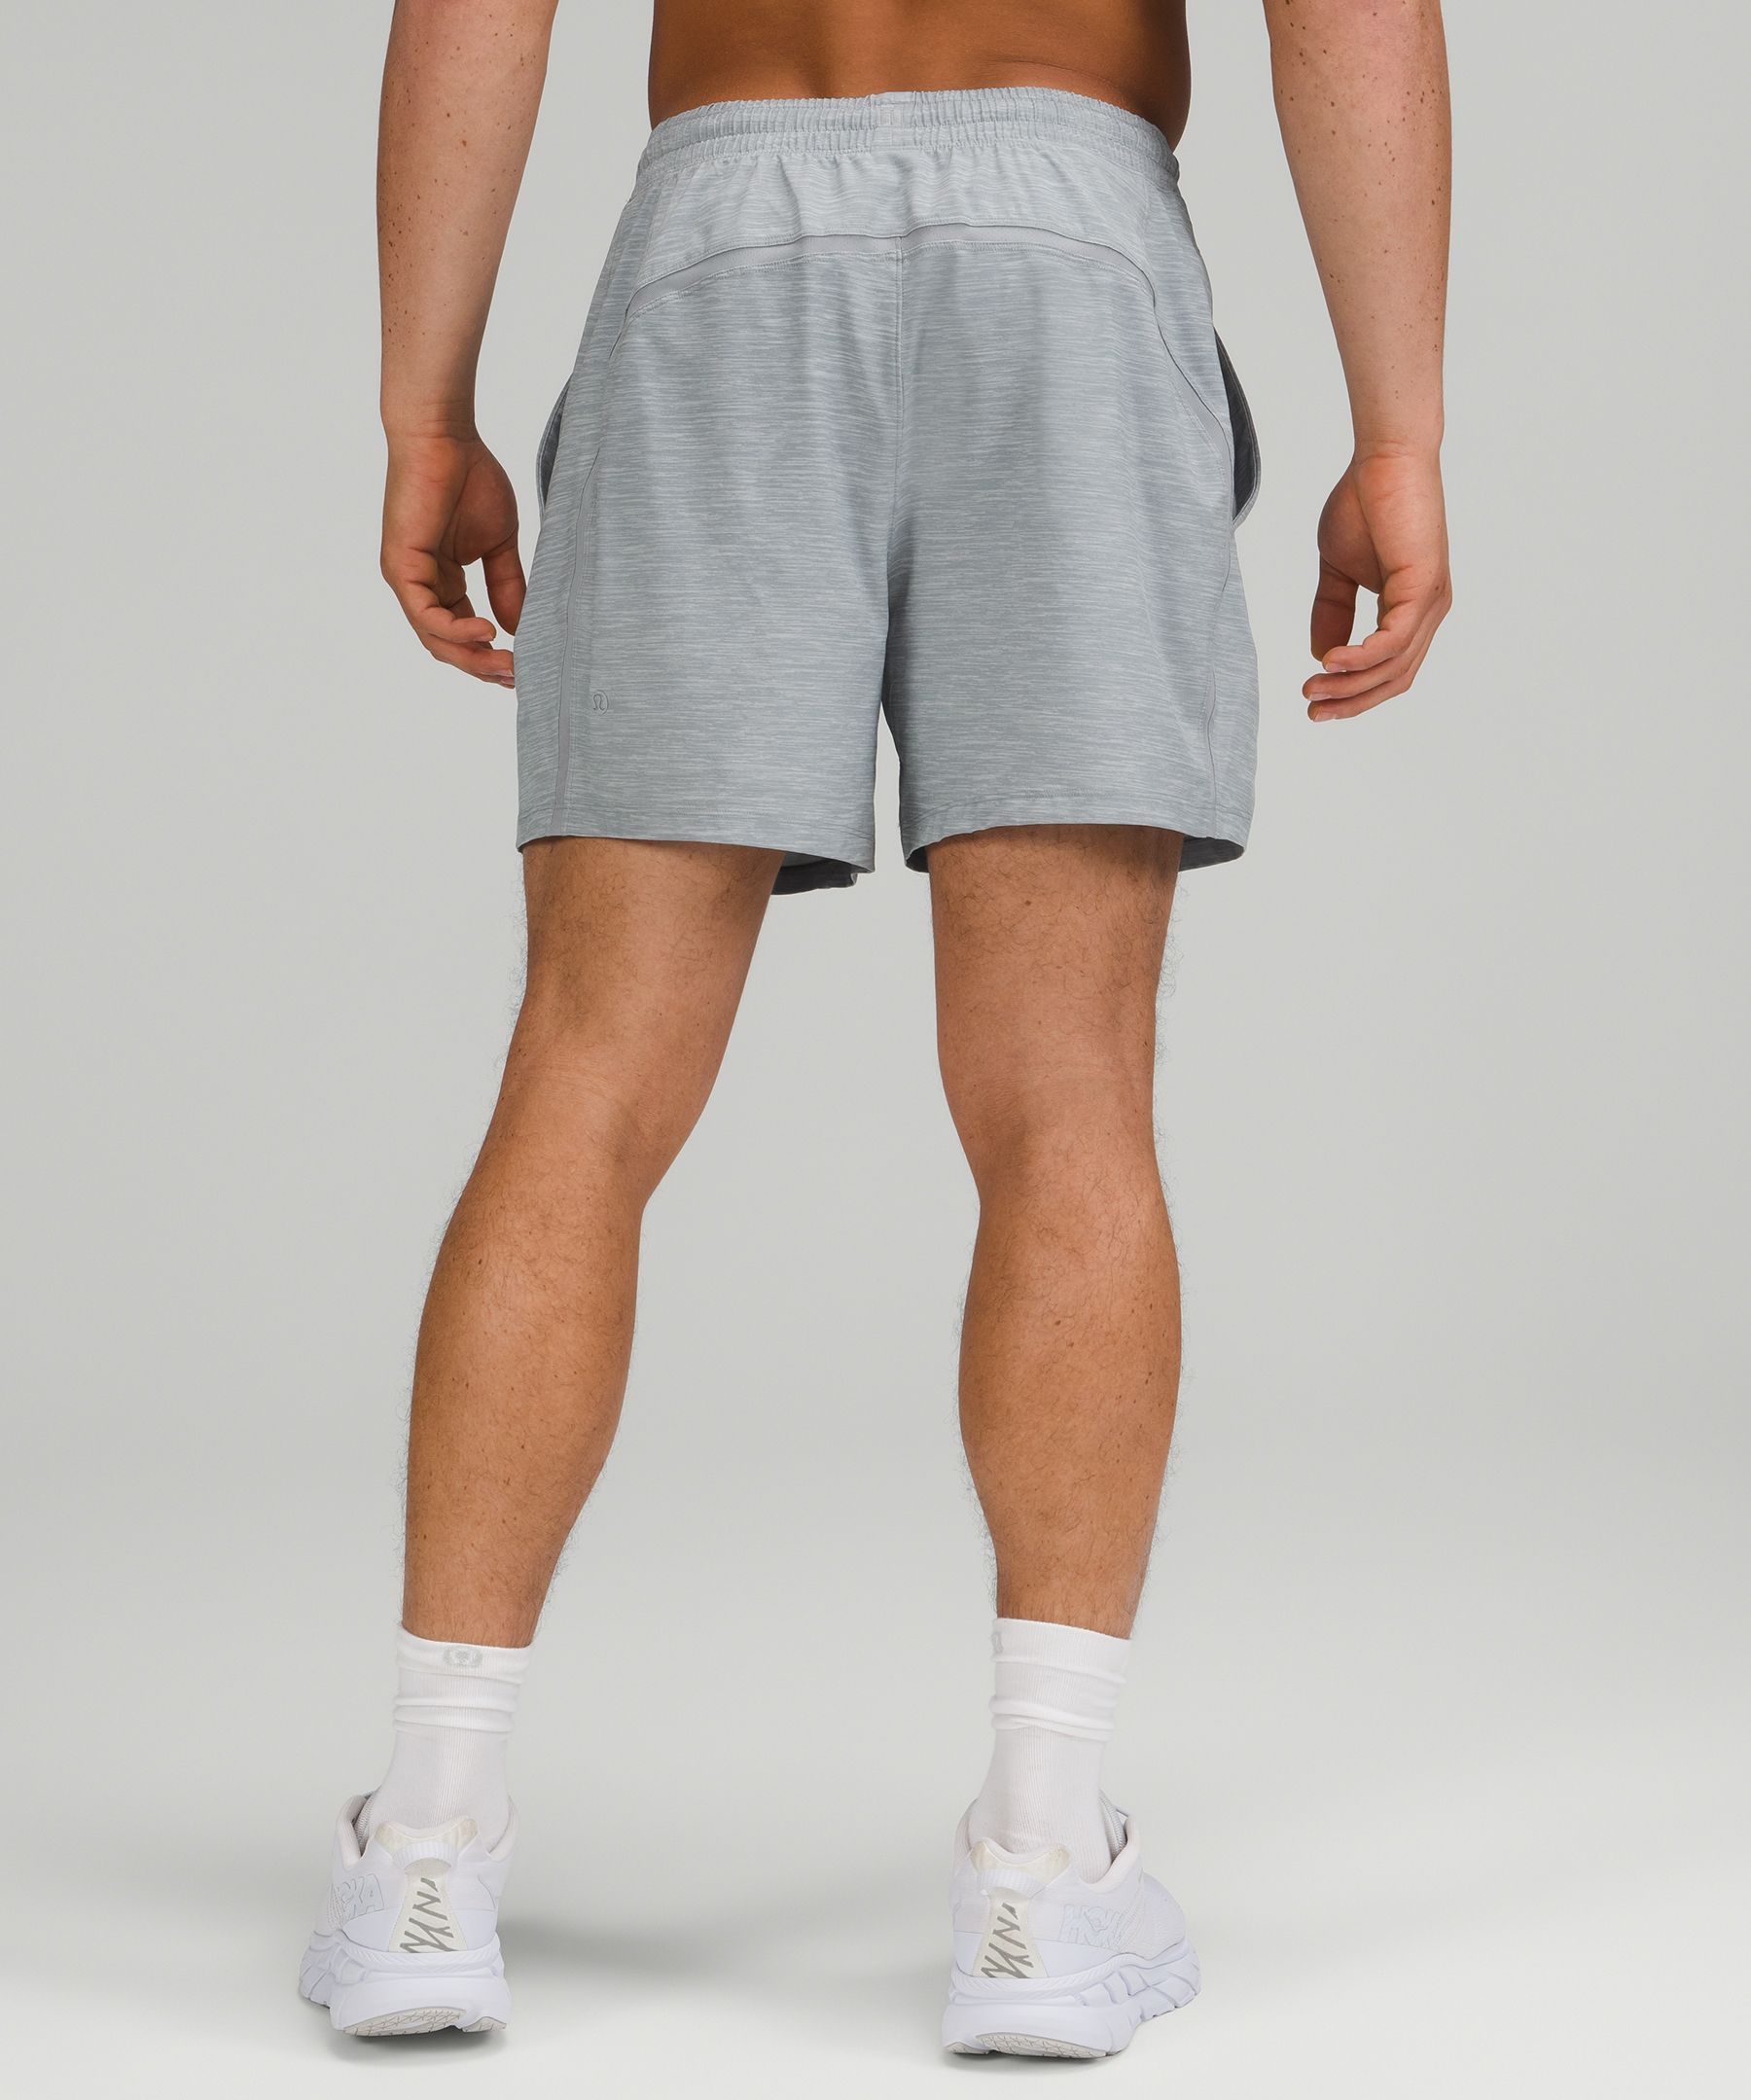 LULULEMON Men's Pace Breaker Short (White (7 Lined), XL, x_l) at   Men's Clothing store